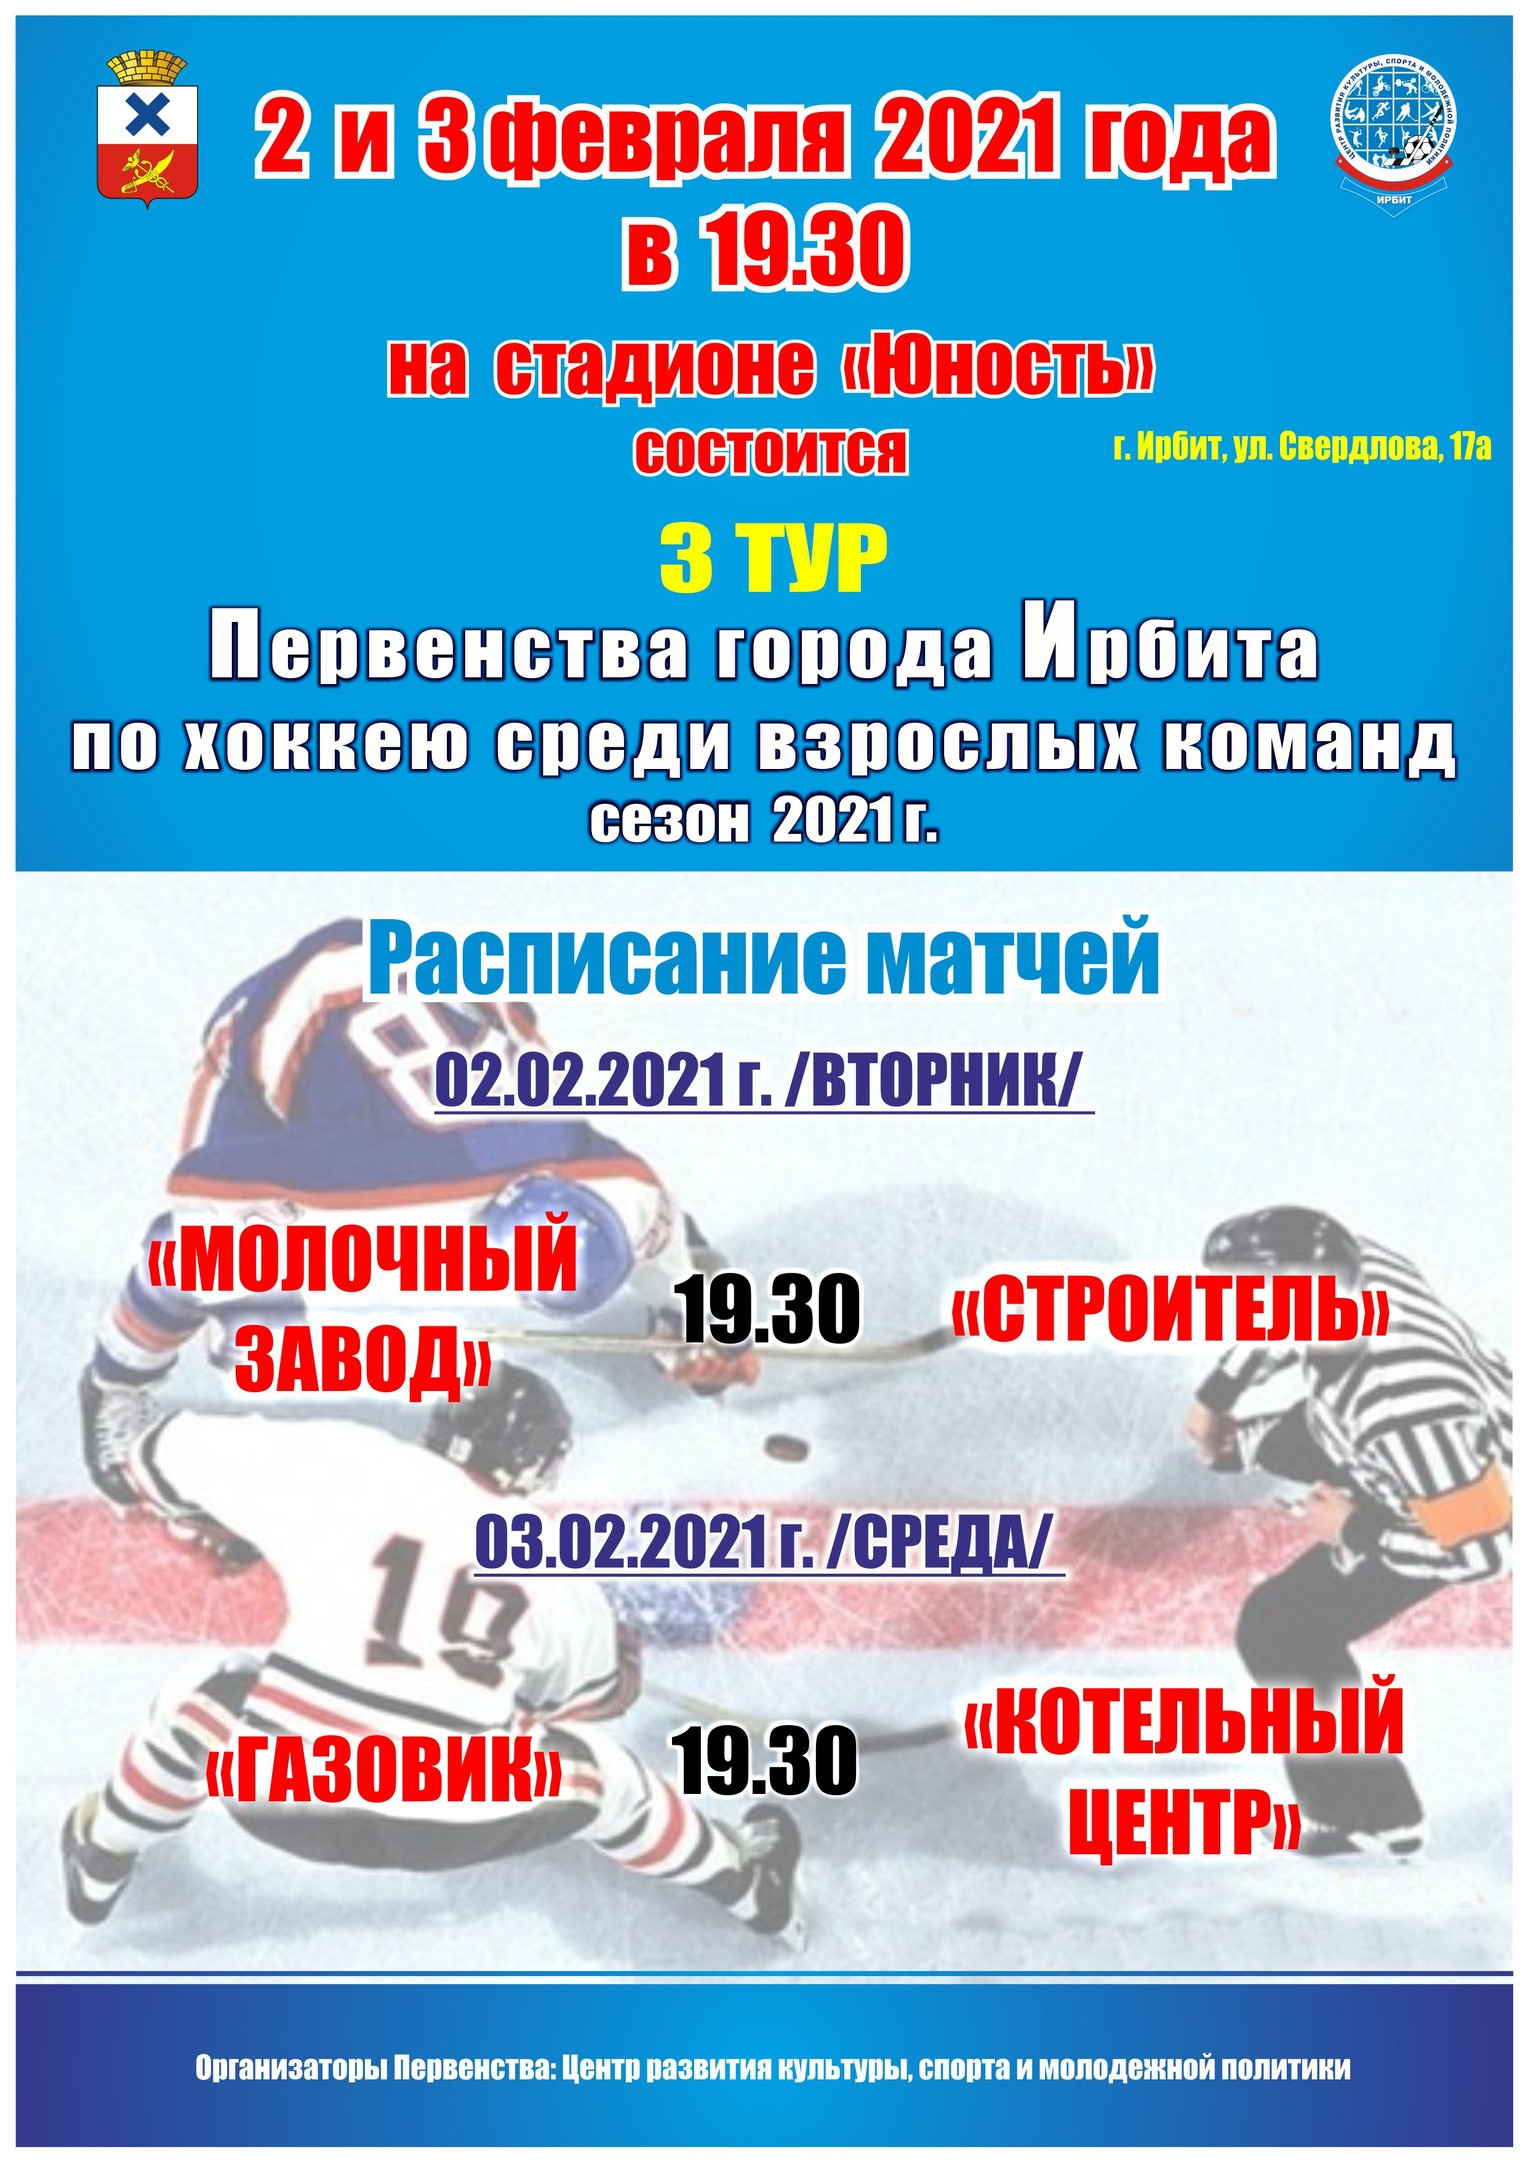 3 тур Первенства города Ирбита по хоккею среди взрослых команд, сезон 2021 г.